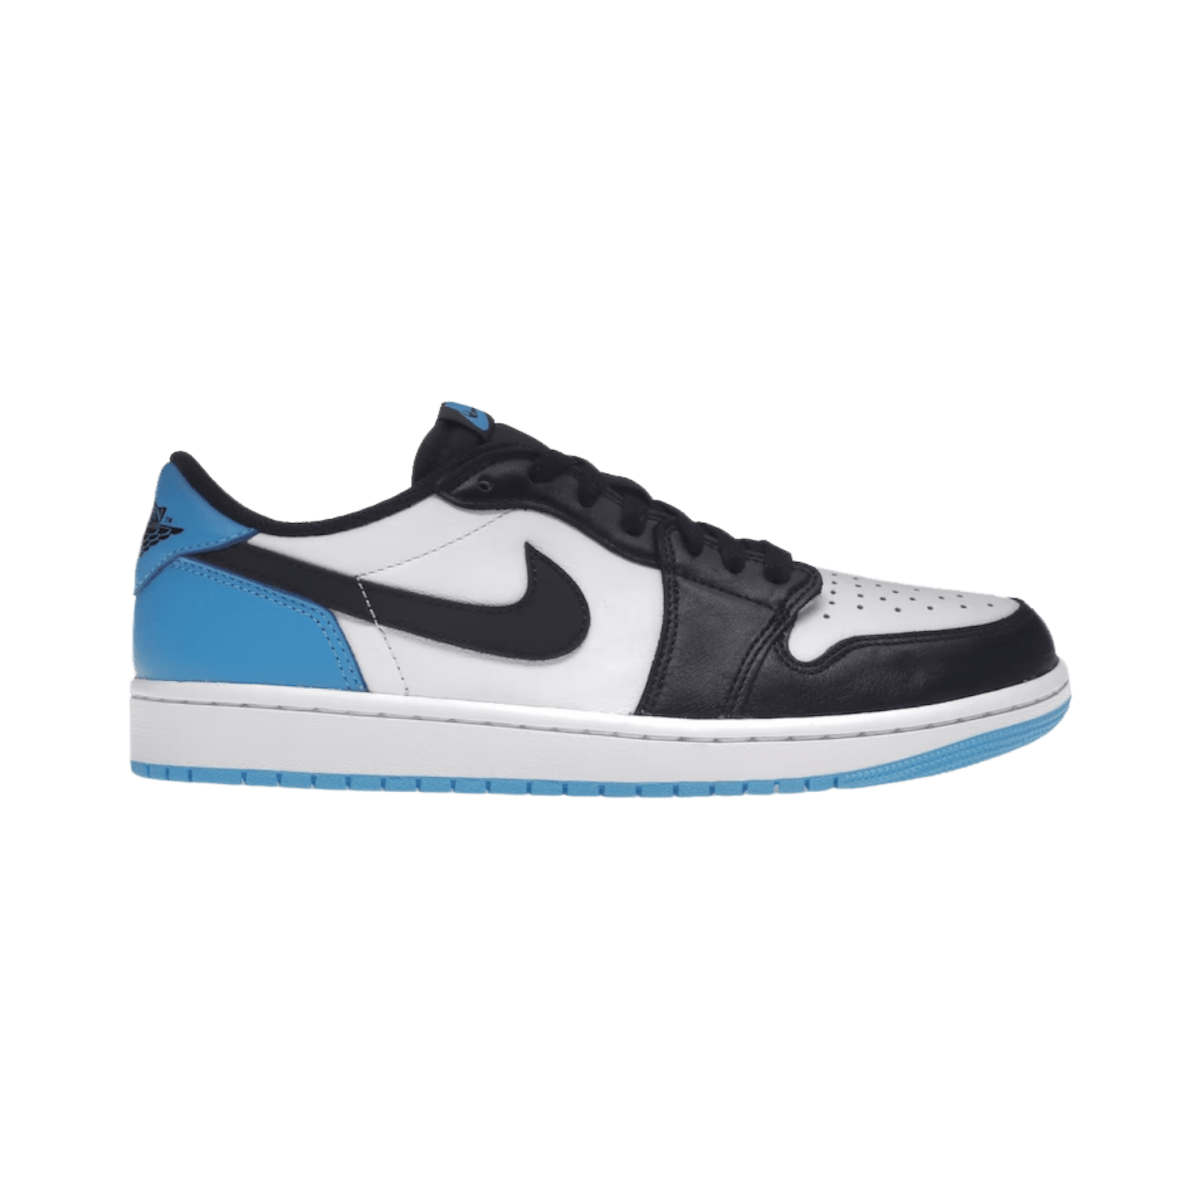 Jordan 1 Retro Low OG Black Dark Powder Blue - Grade School - Low Sneaker - Jawns on Fire Sneakers & Streetwear